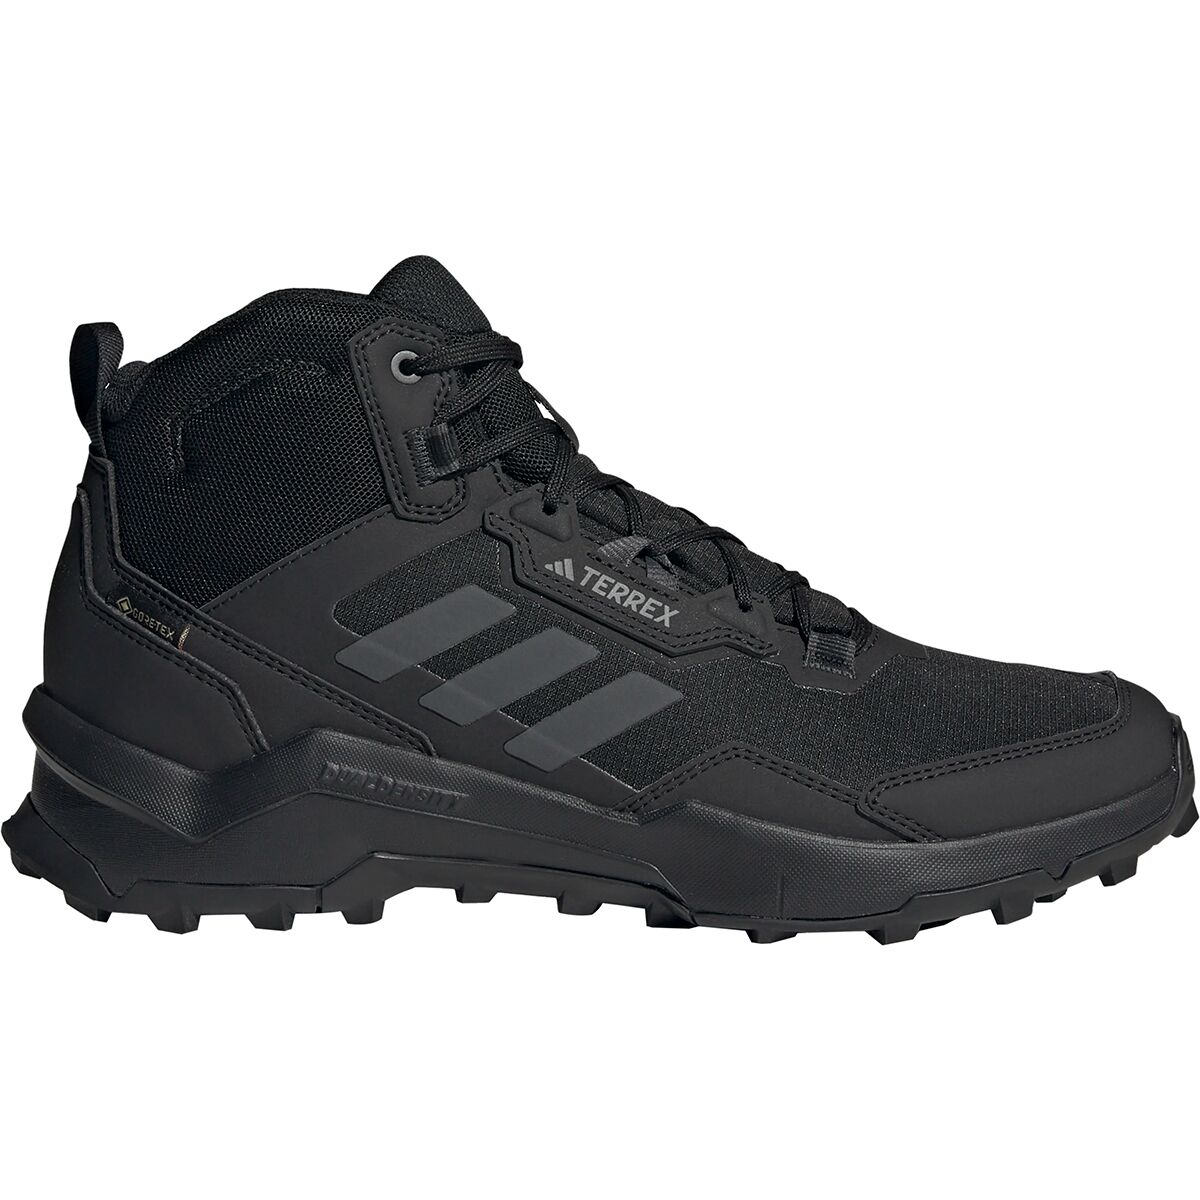 Adidas TERREX Mid GTX Boot - Men's -